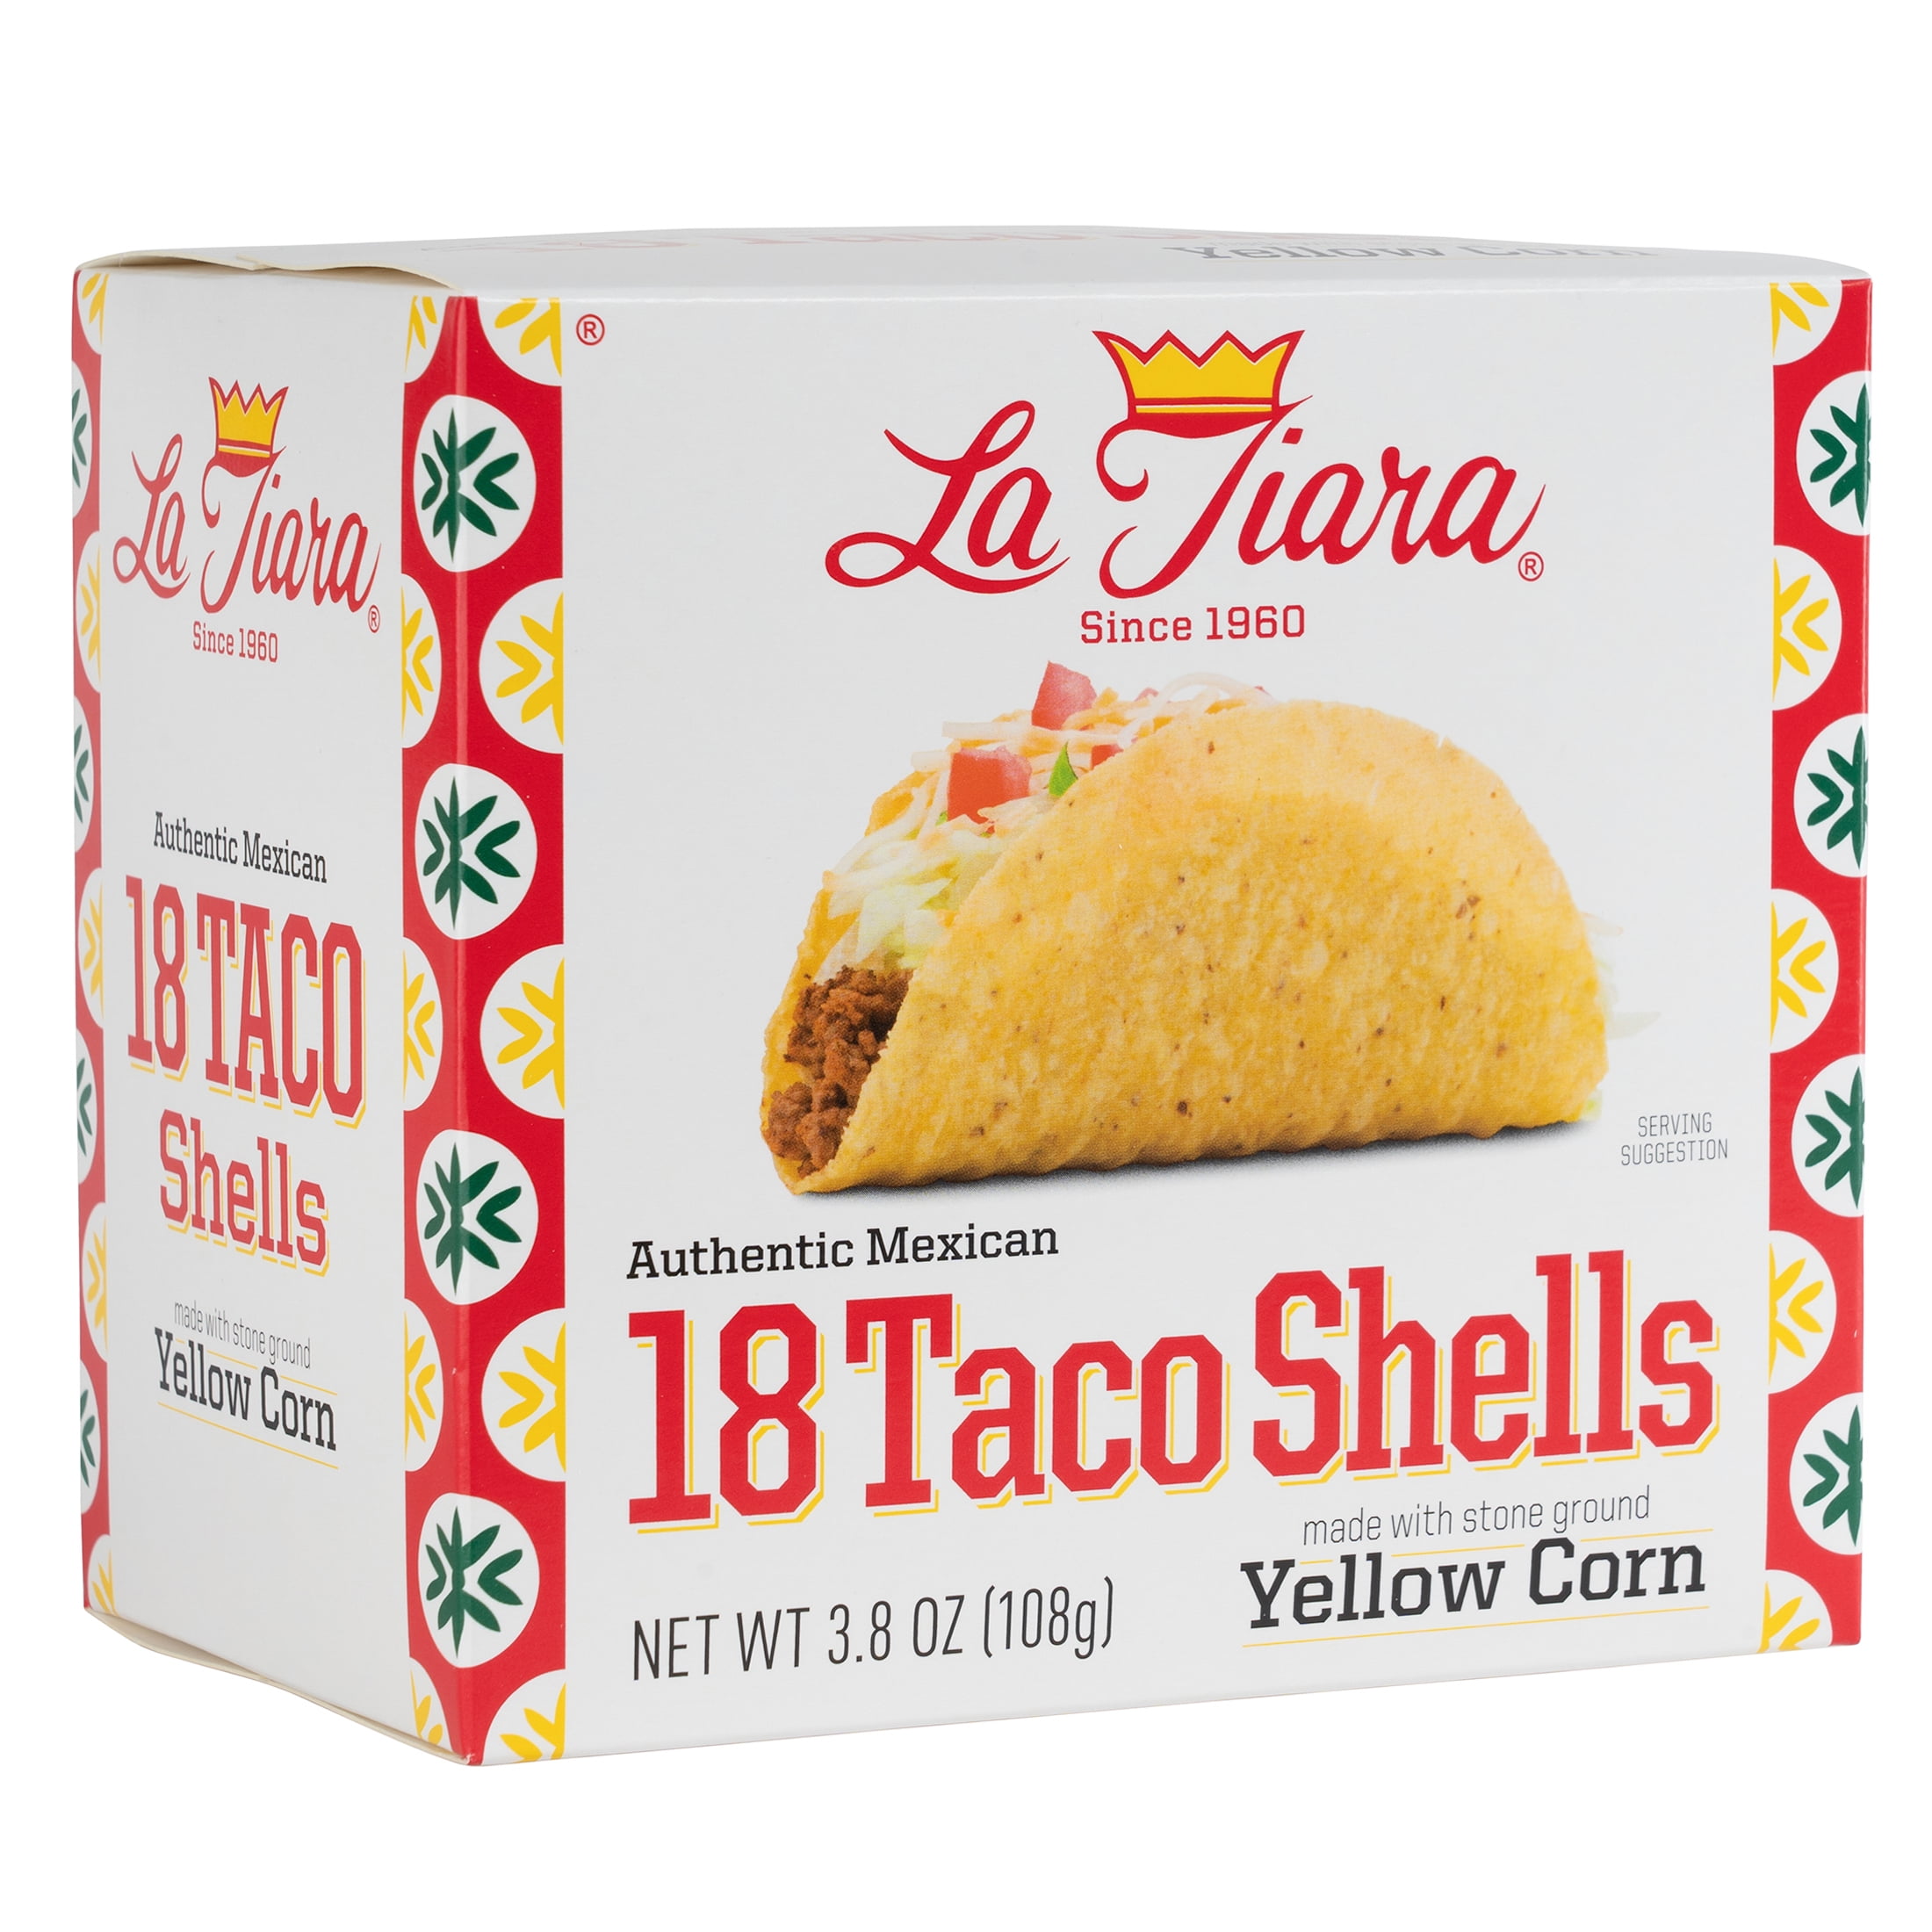 Old El Paso Crunchy Taco Shells 18CT 6.8oz Box